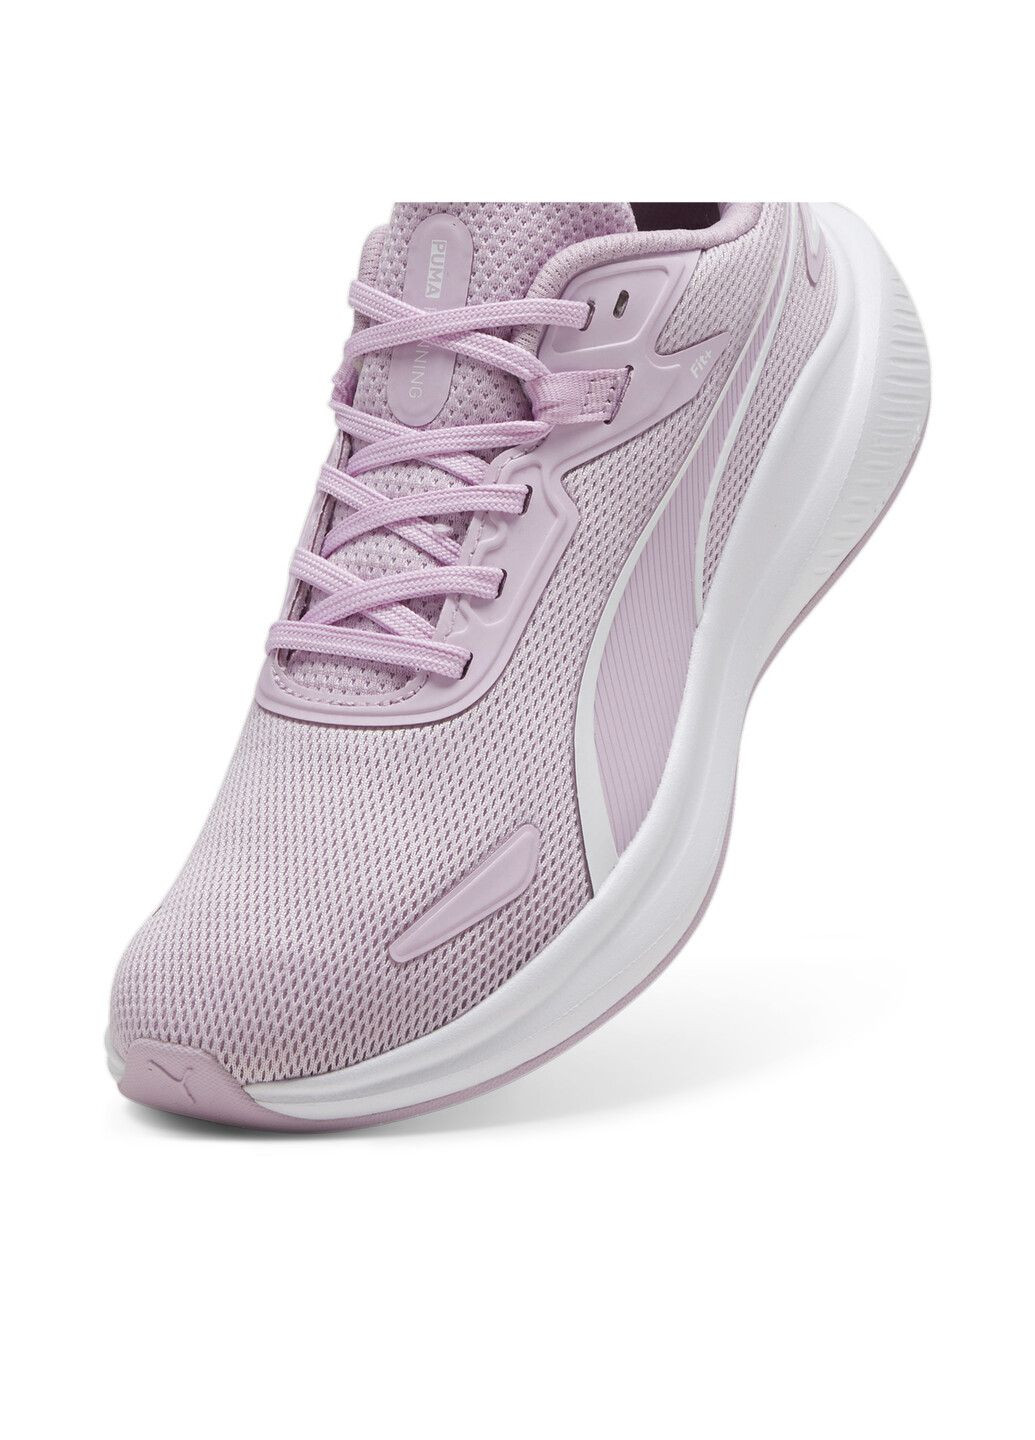 Пурпурные всесезонные кроссовки skyrocket lite running shoes Puma